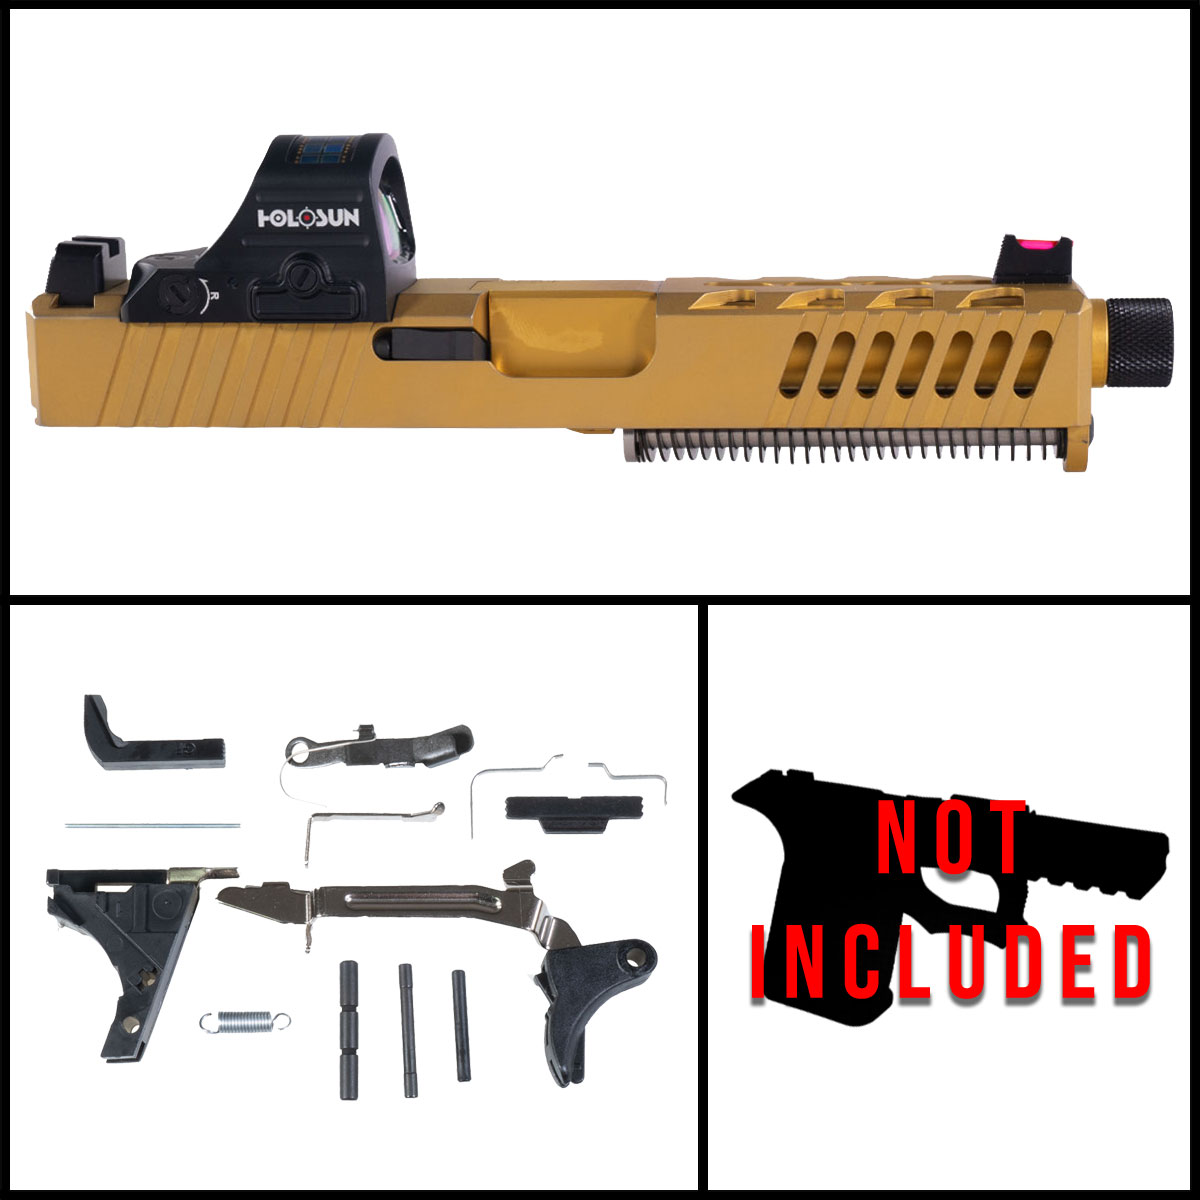 OTD 'King' 9mm Full Pistol Build Kit (Everything Minus Frame) - Glock 19 Compatible